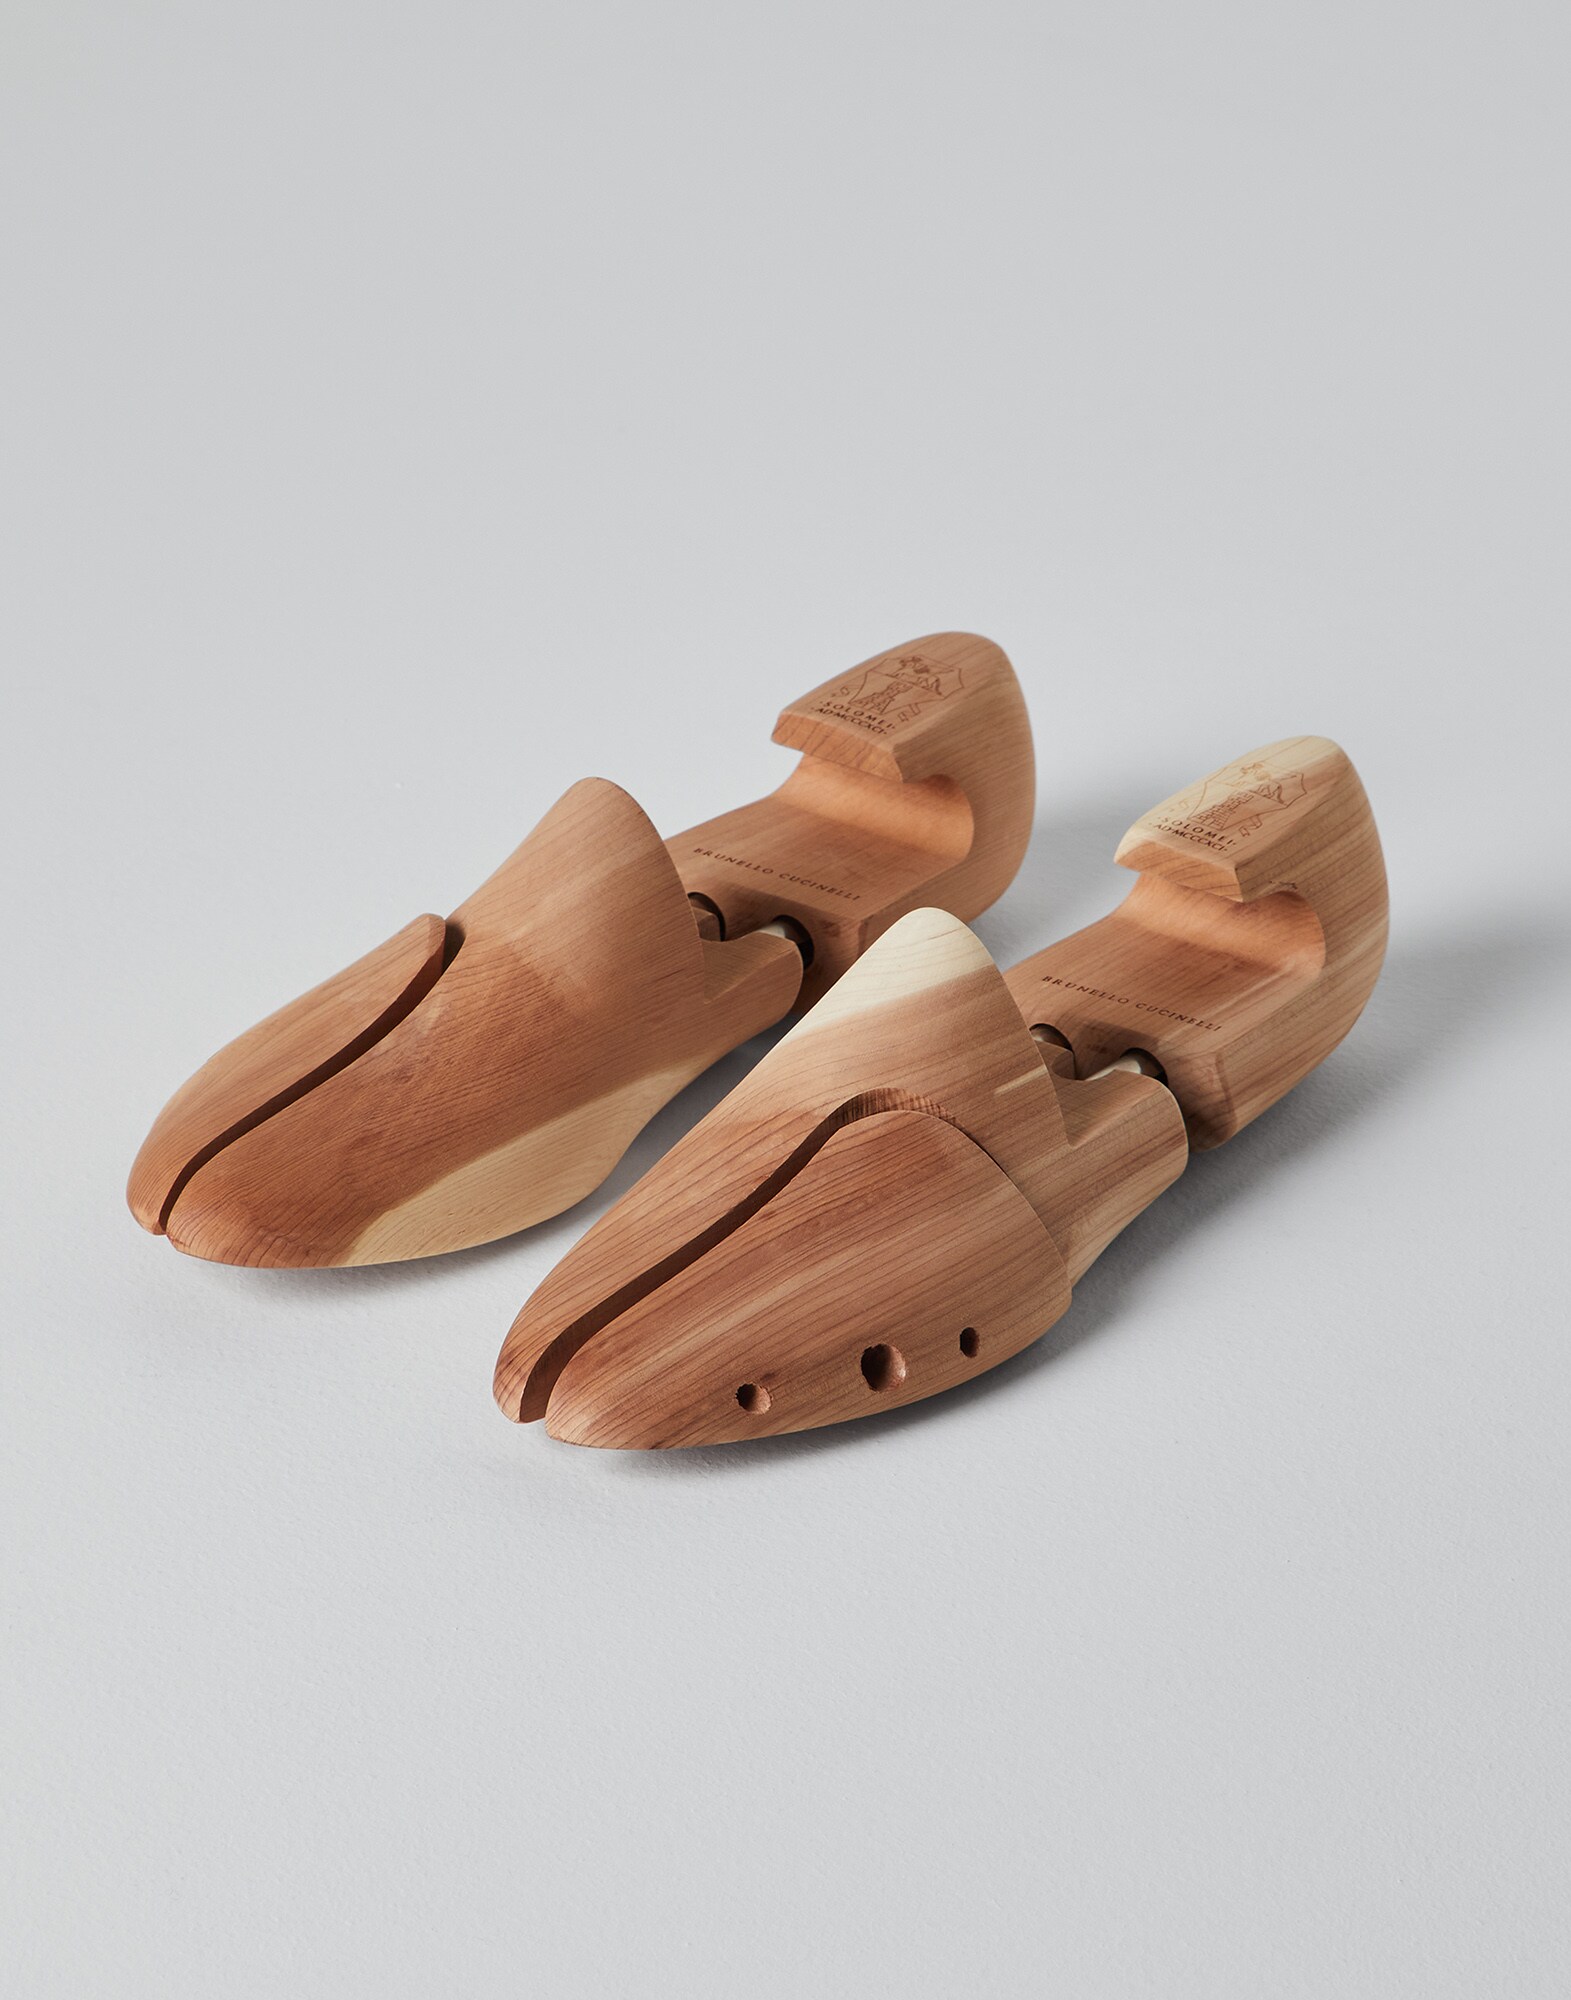 Schuhspanner aus Zedernholz